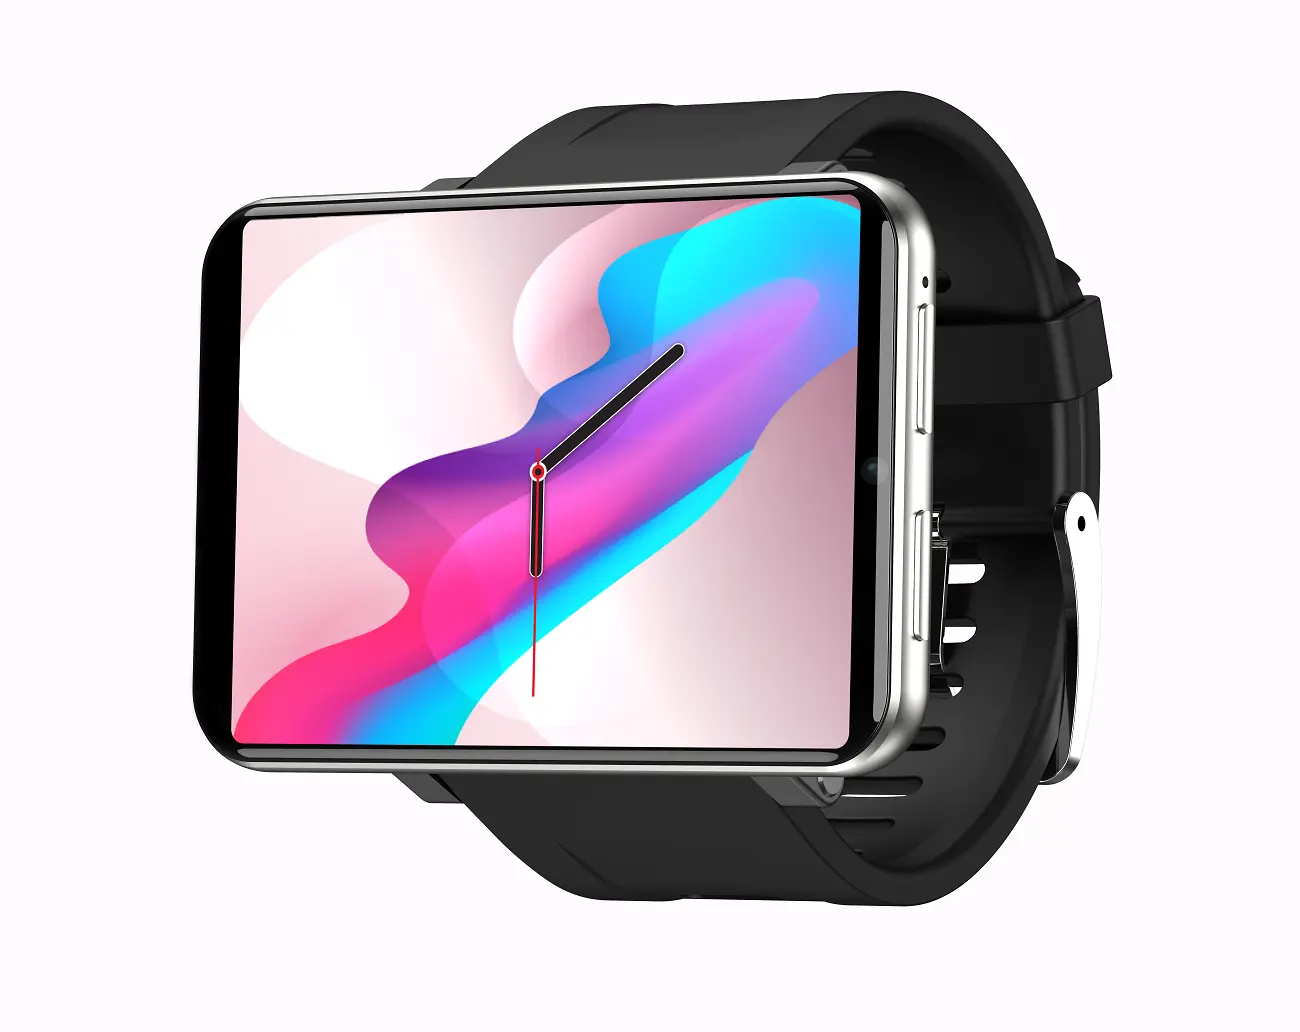 2023 Android cuộc gọi điện thoại Smartwatch nhà sản xuất người đàn ông GPS 4 gam Đồng hồ thông minh với khe cắm thẻ Sim